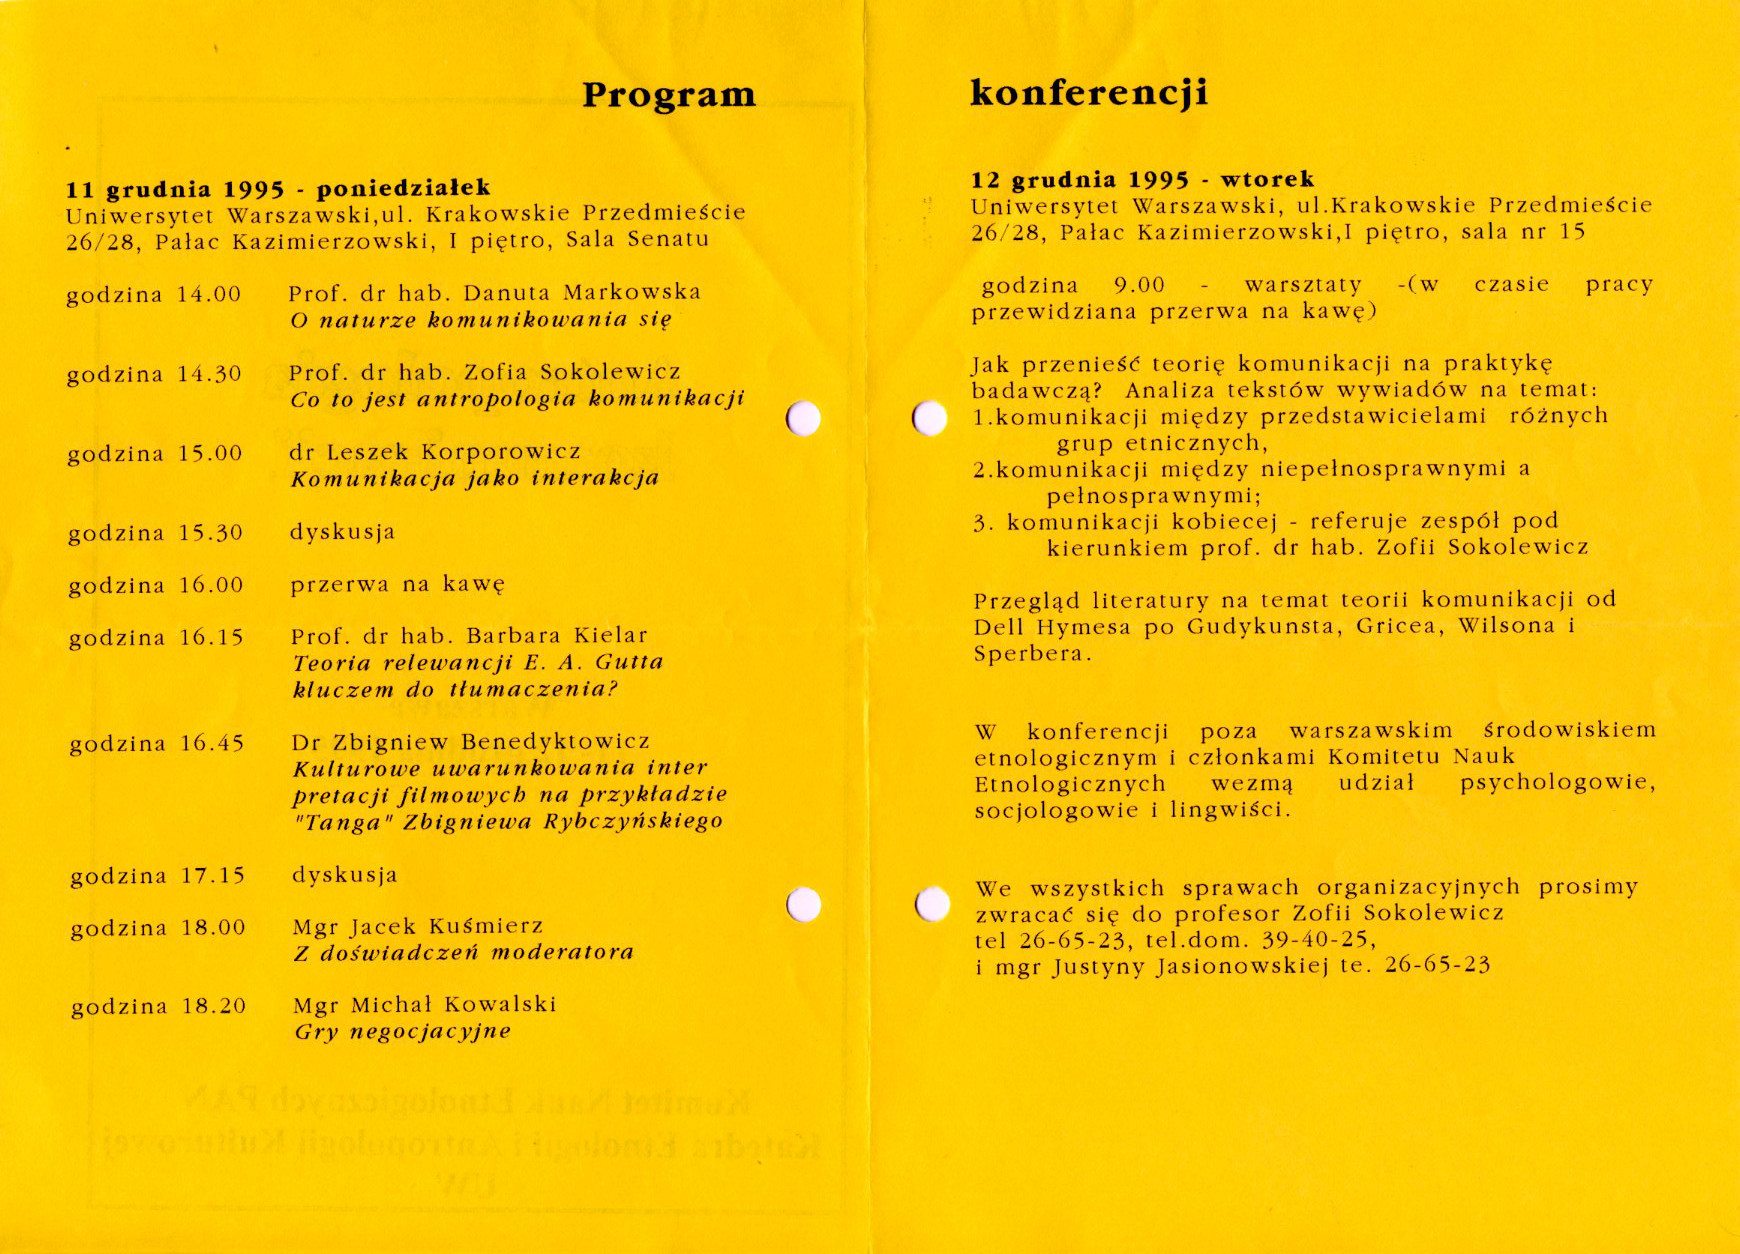 konferencja-1995-Warszawa-program2